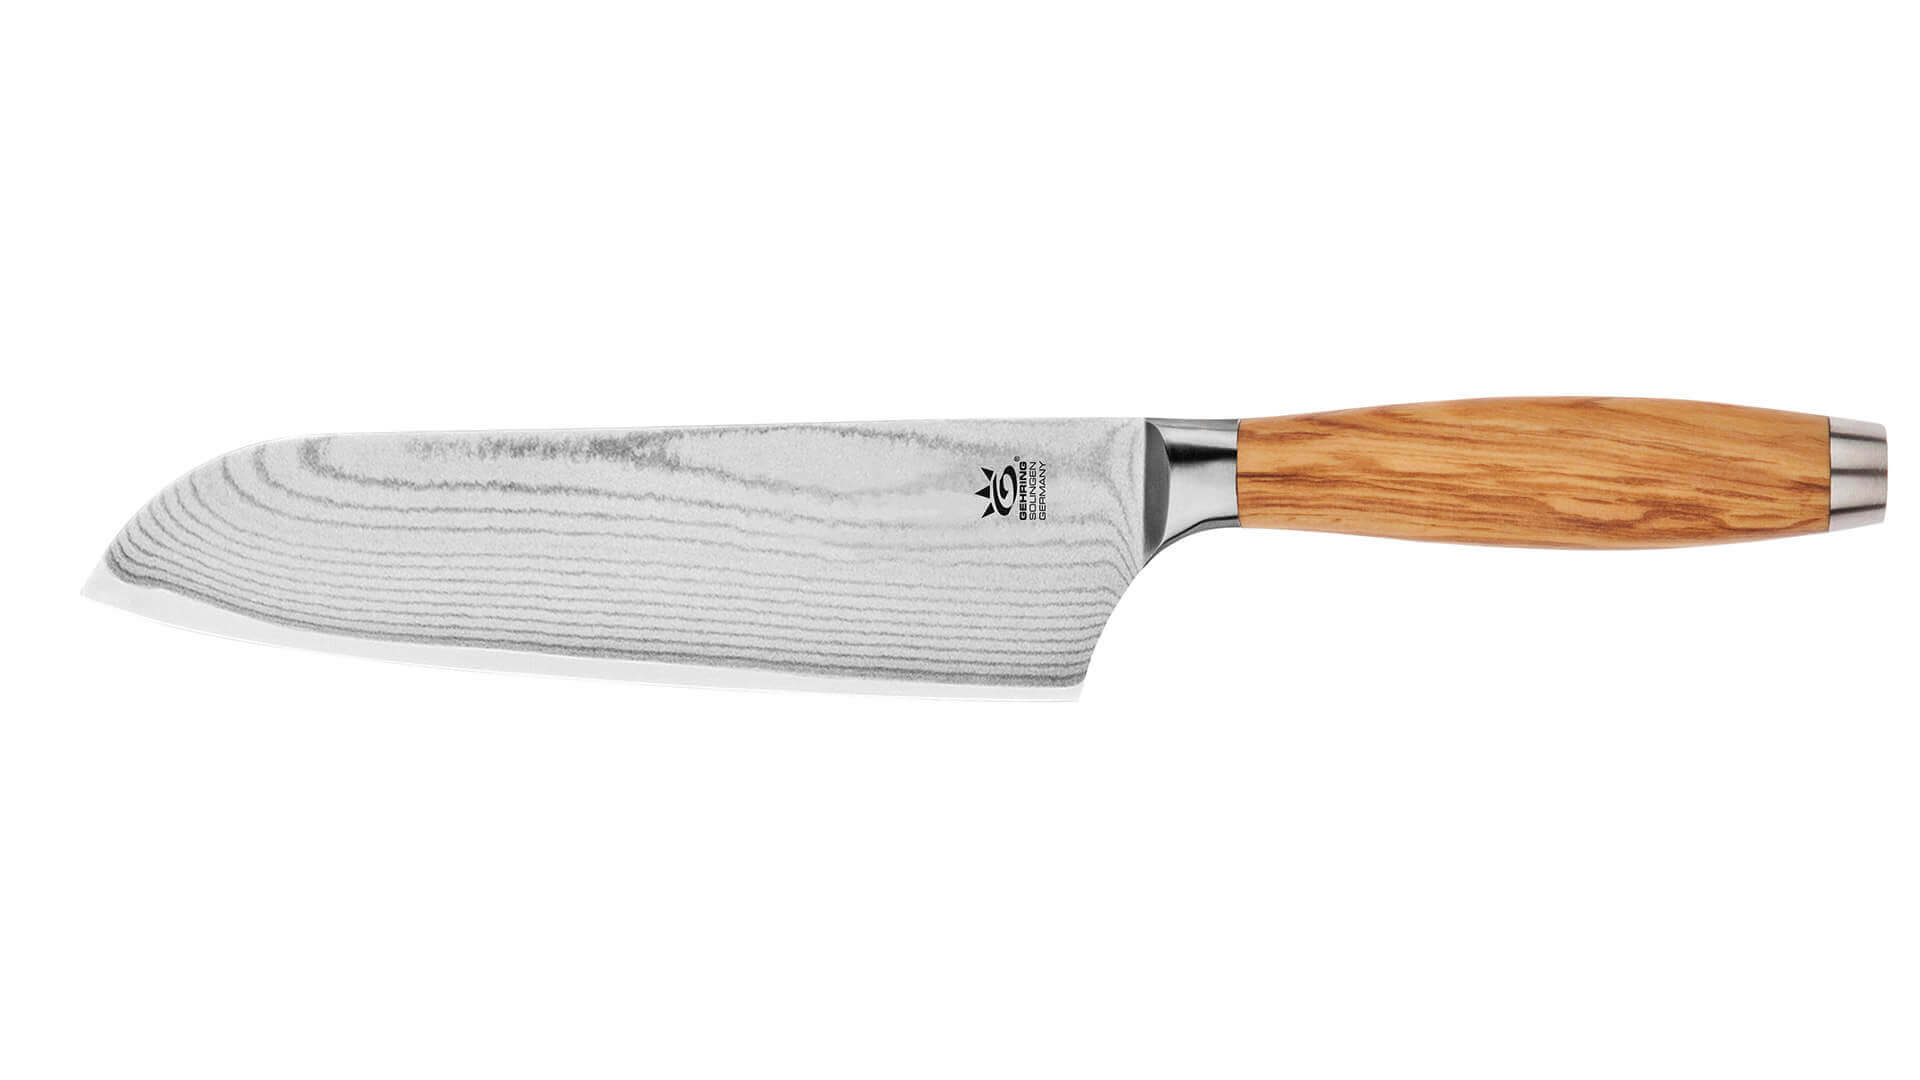 gehring-hgs-my2-santoku-knife-damask-knife-18-cm-solingen-buy